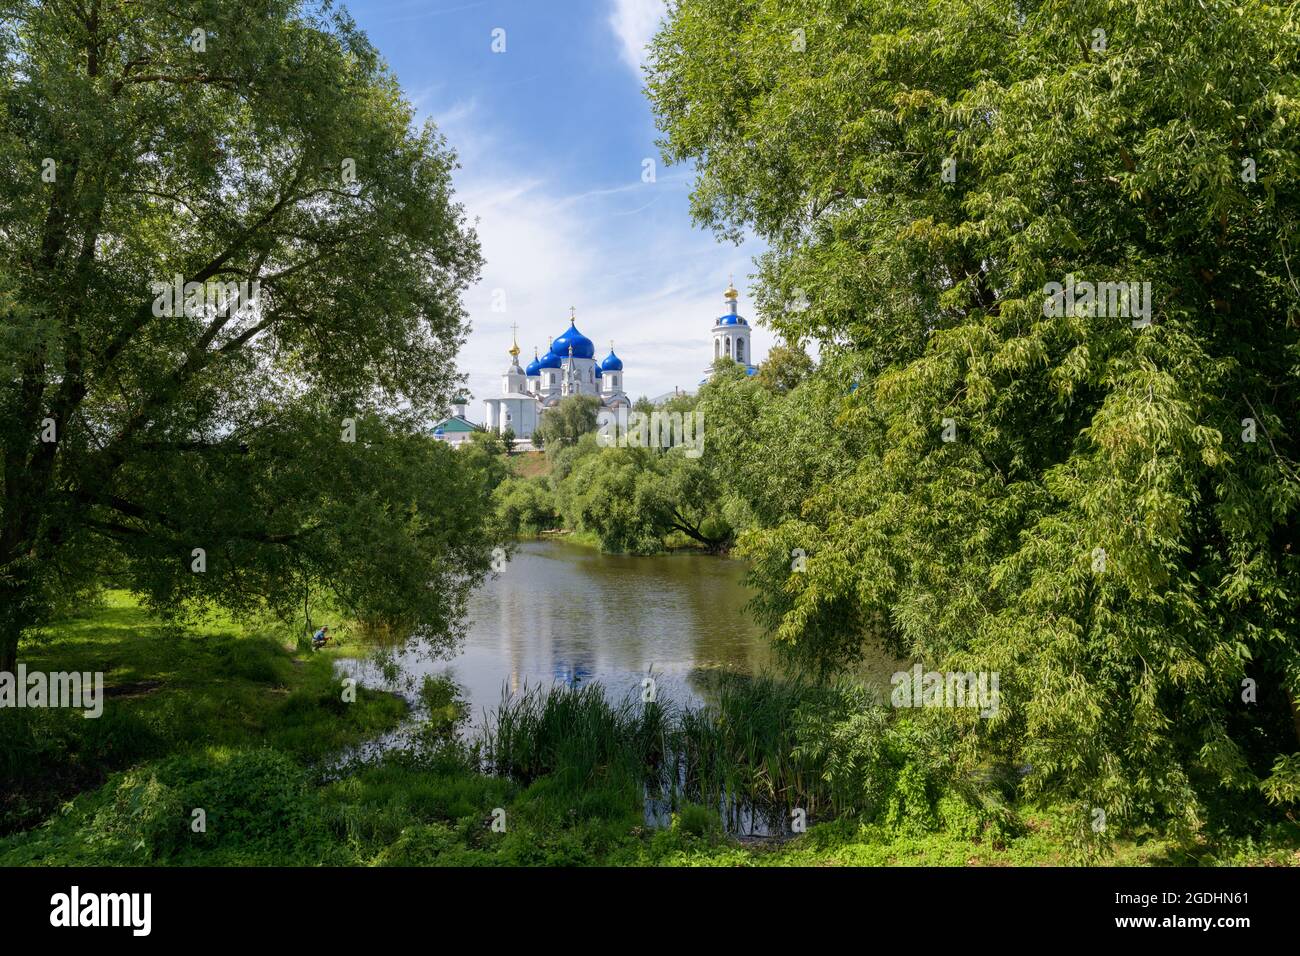 Un paysage russe typique. Couvent Saint-Bogolyoubsky. Bogolyubovo, région de Vladimir, Russie Banque D'Images